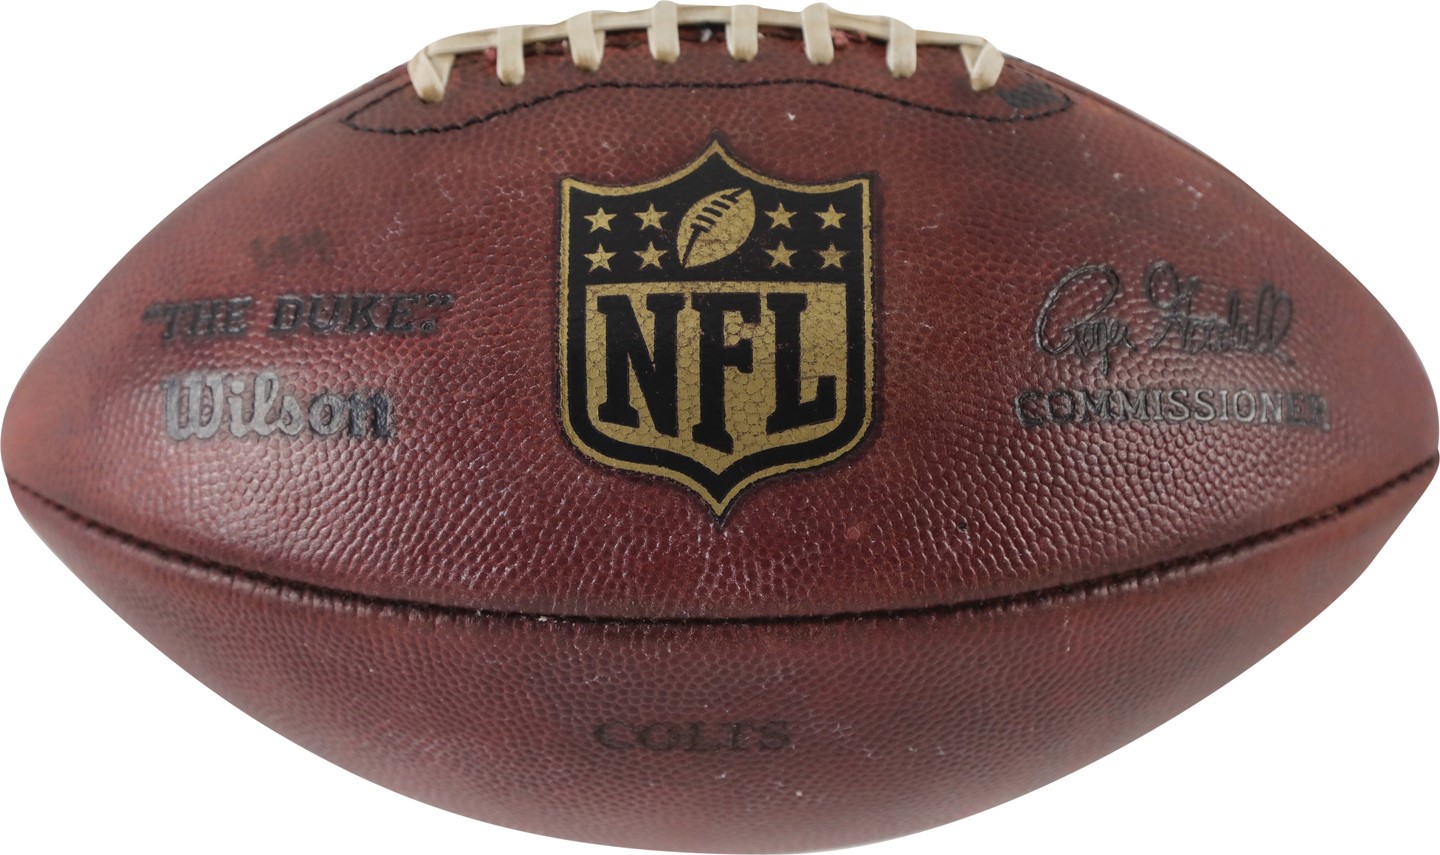 - Deflategate" Game Used Football (NFL Referee Provenance)